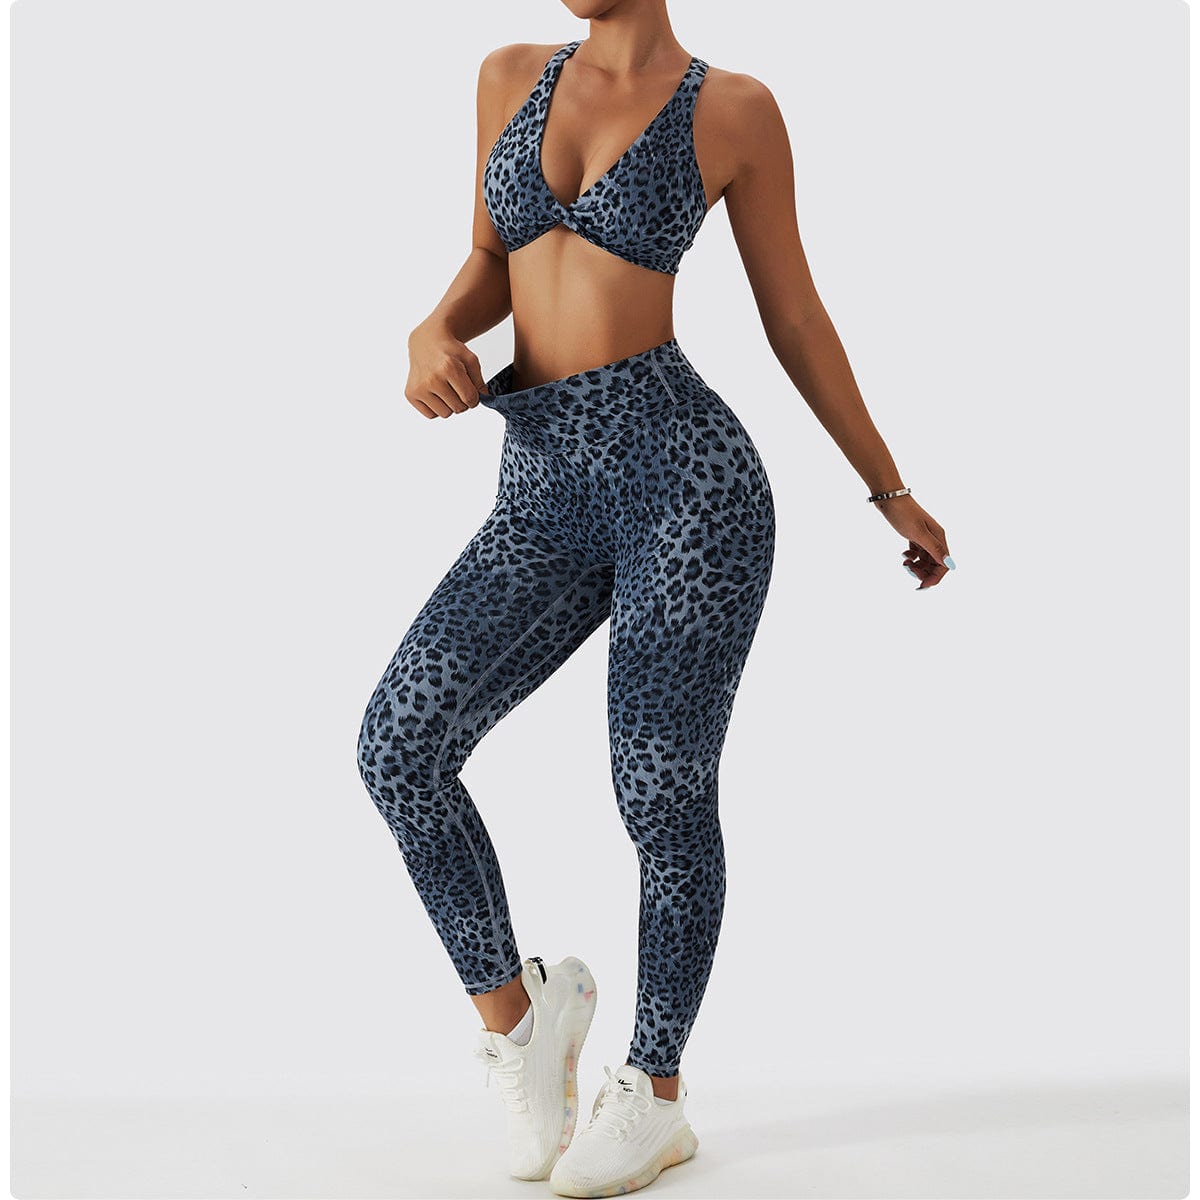 Decdeal 2PCS Women Leopard Print Bra High Waist Leggings Seamless Fitness  Running Gym Sports Set : : Clothing & Accessories